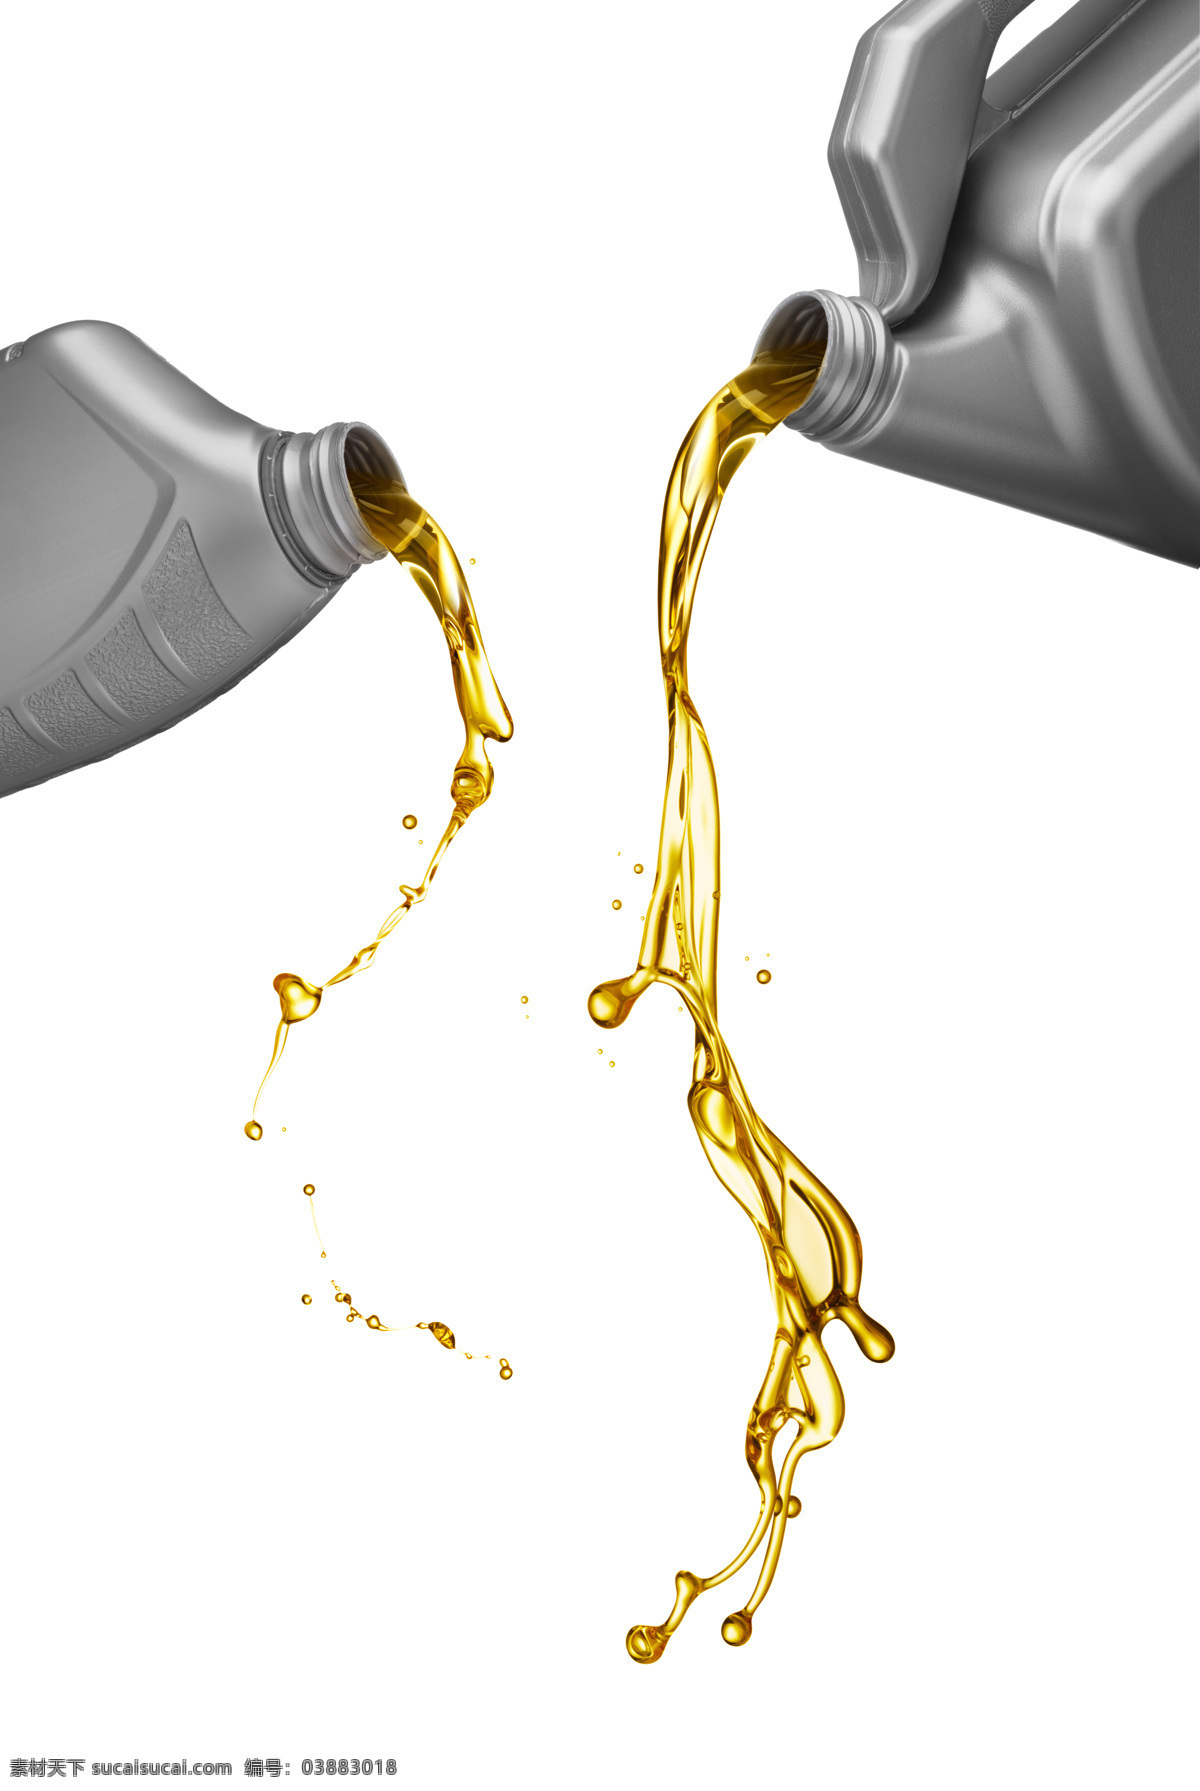 机油 润滑油 汽油 油 油料 汽车保养 汽车工业 生活百科 生活素材